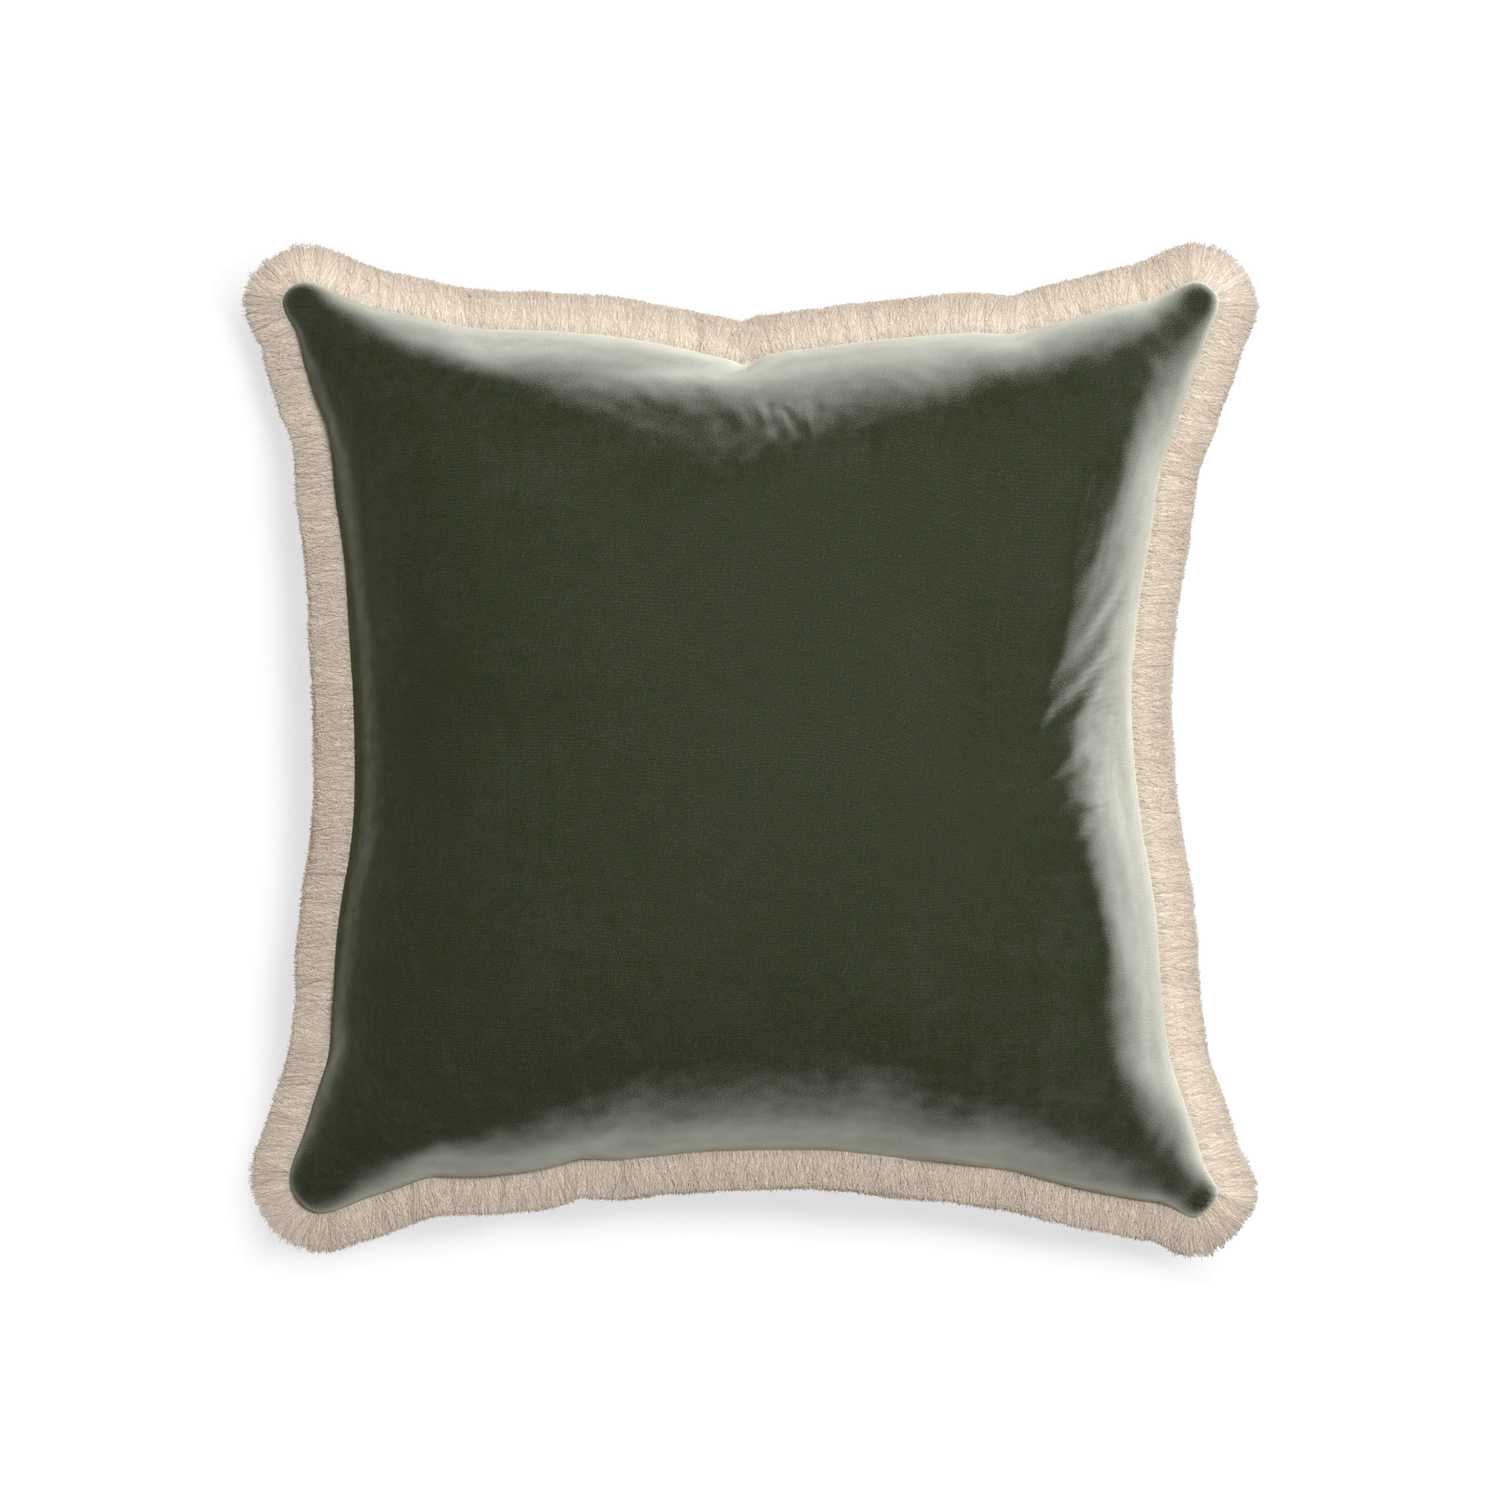 square fern green velvet pillow with cream fringe